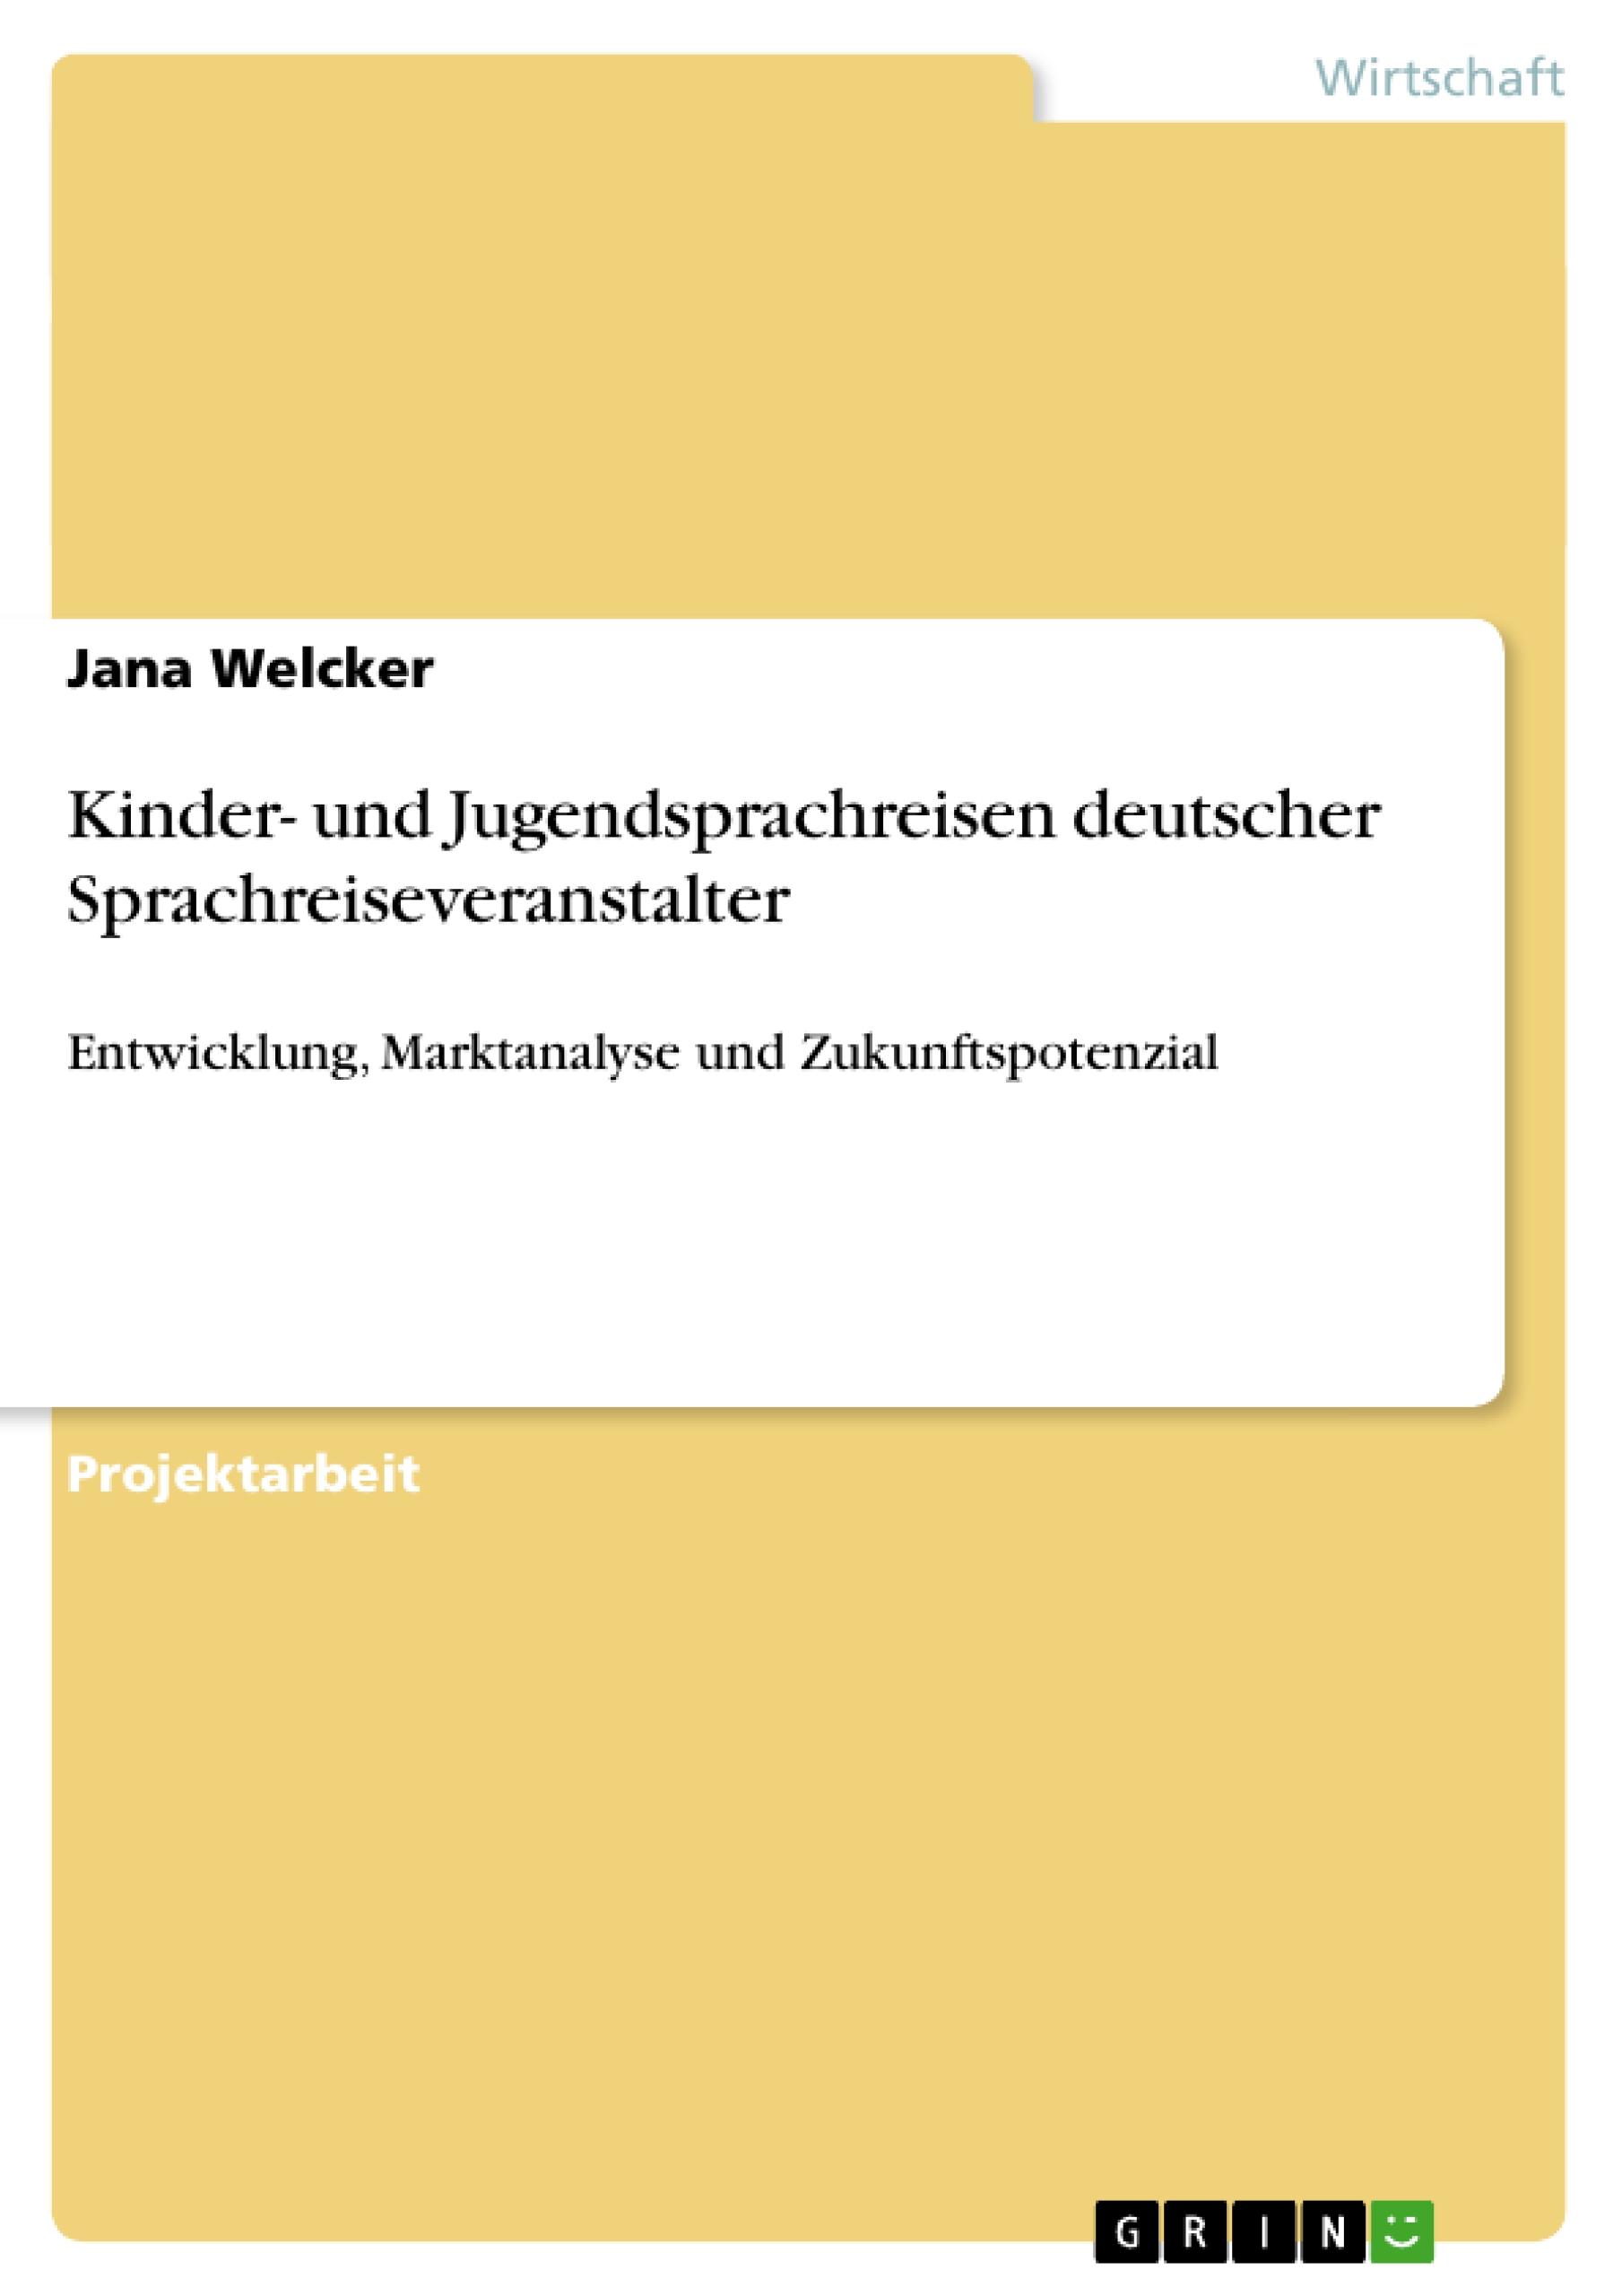 Kinder- und Jugendsprachreisen deutscher Sprachreiseveranstalter - Welcker, Jana